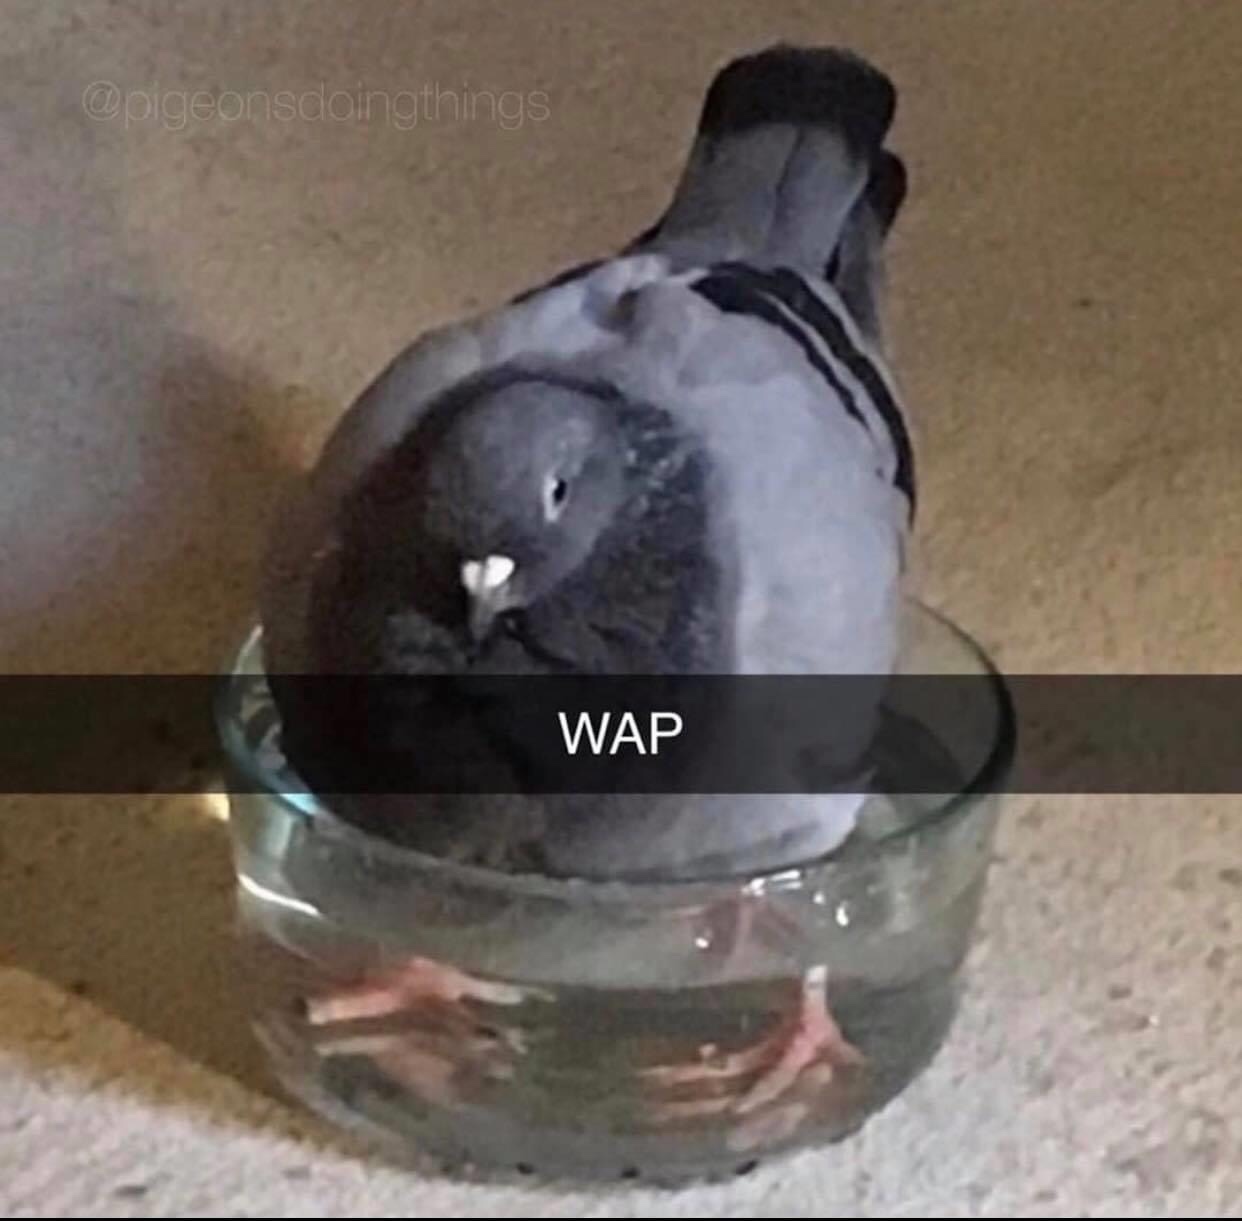 wet ass pigeon - meme